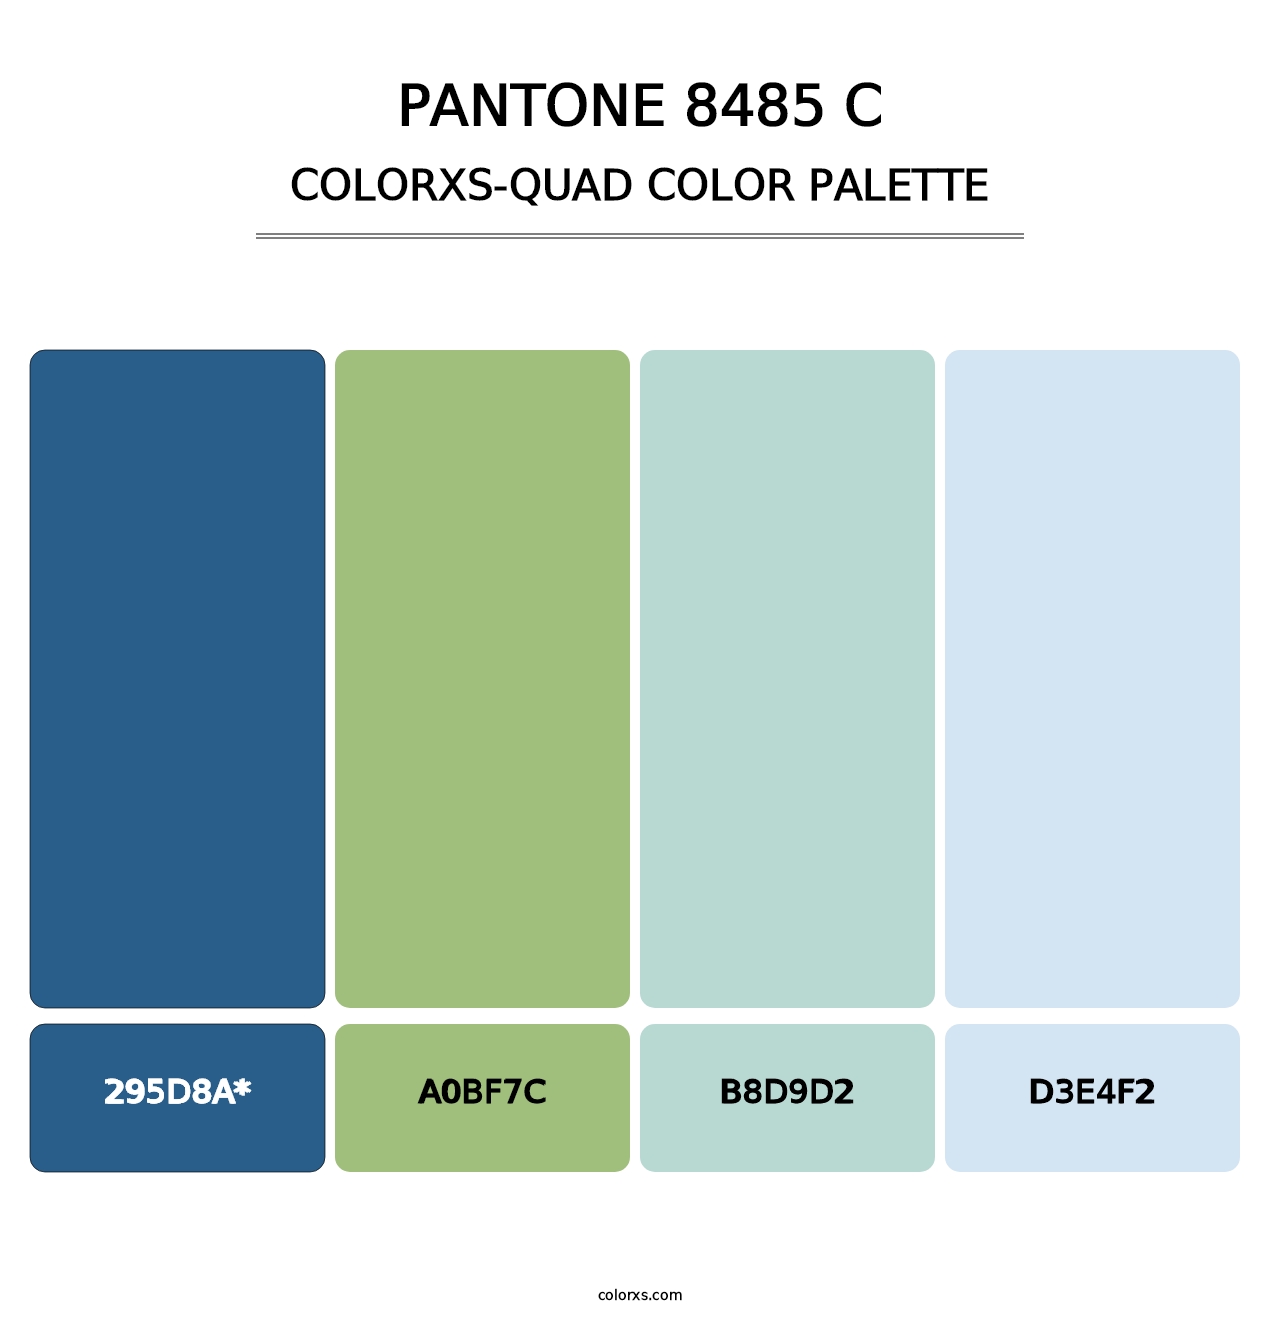 PANTONE 8485 C - Colorxs Quad Palette